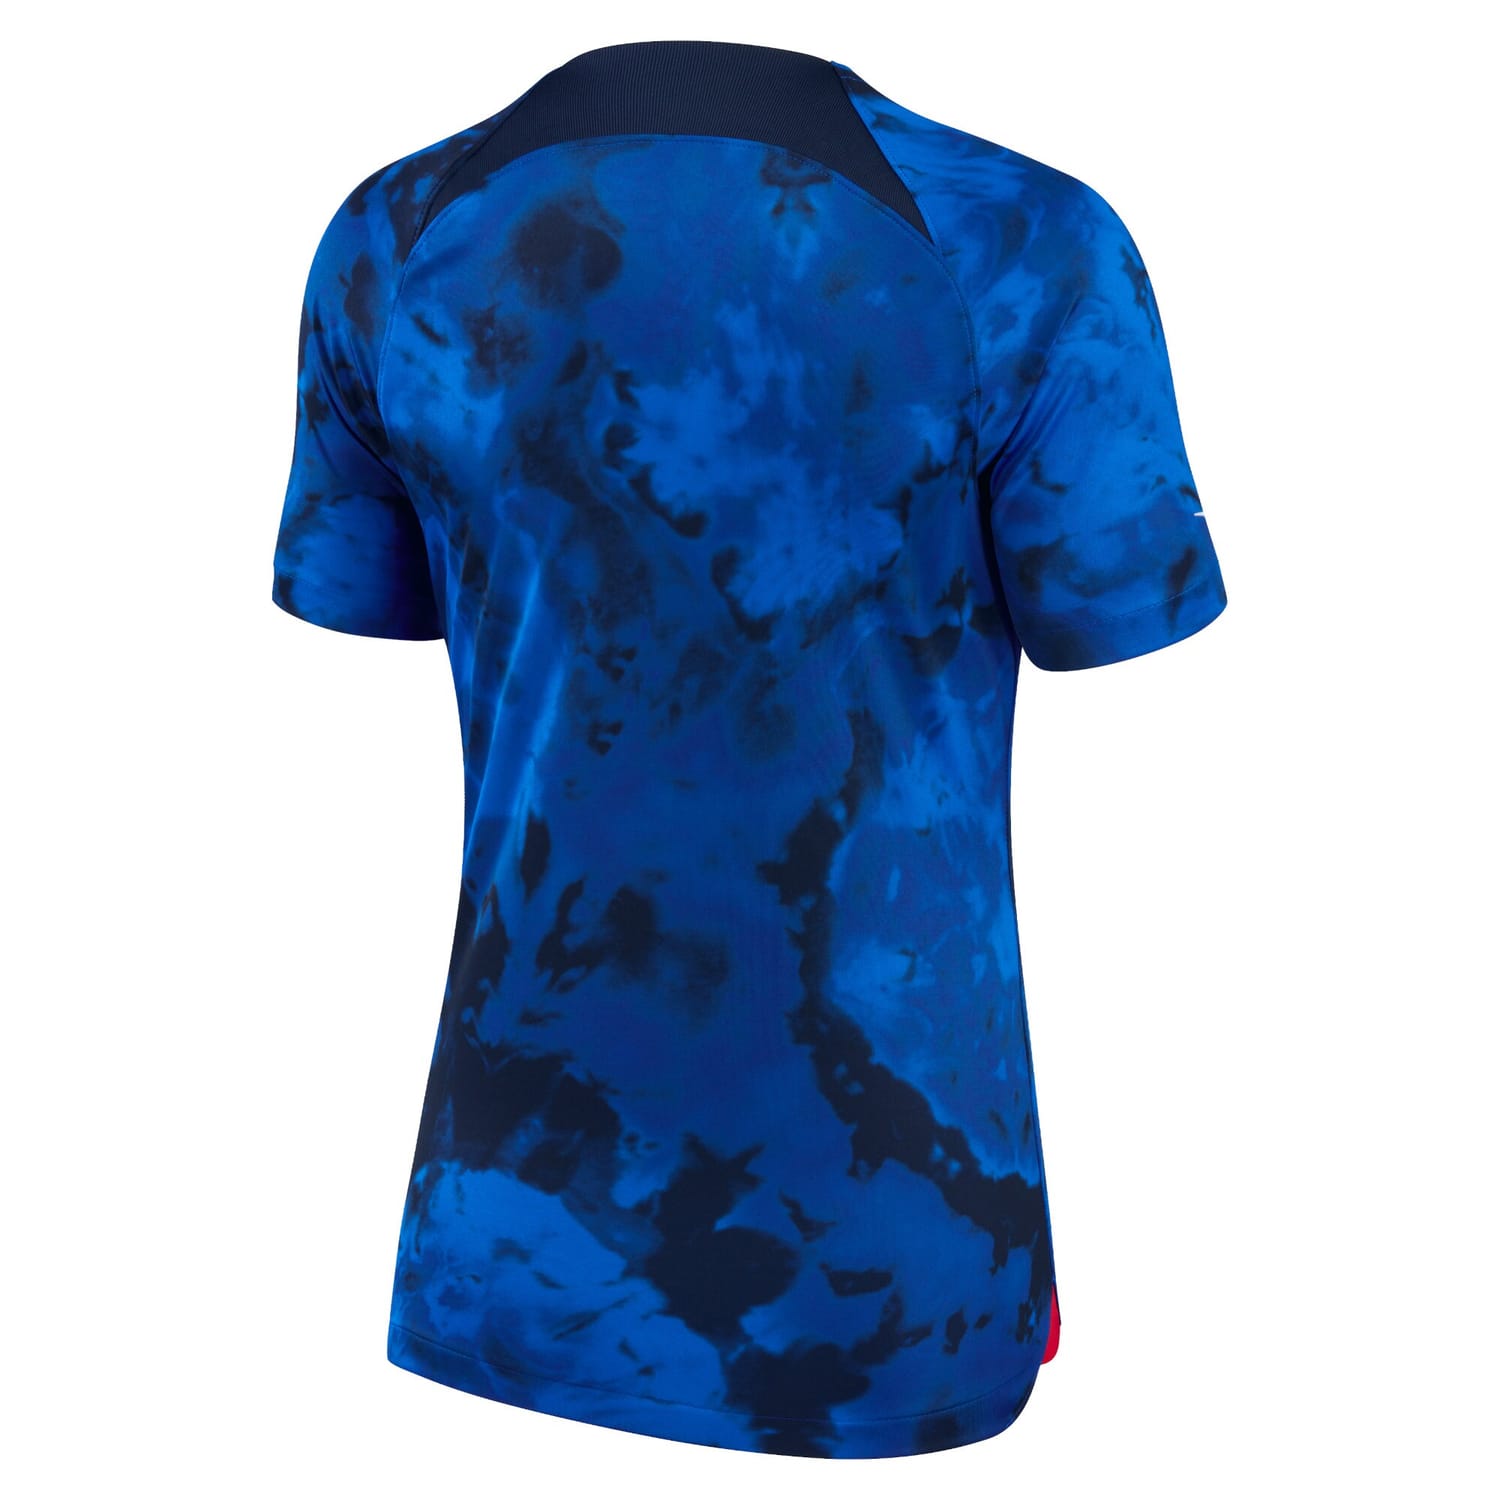 USMNT Away Jersey Shirt Blue 2022-23 for Women